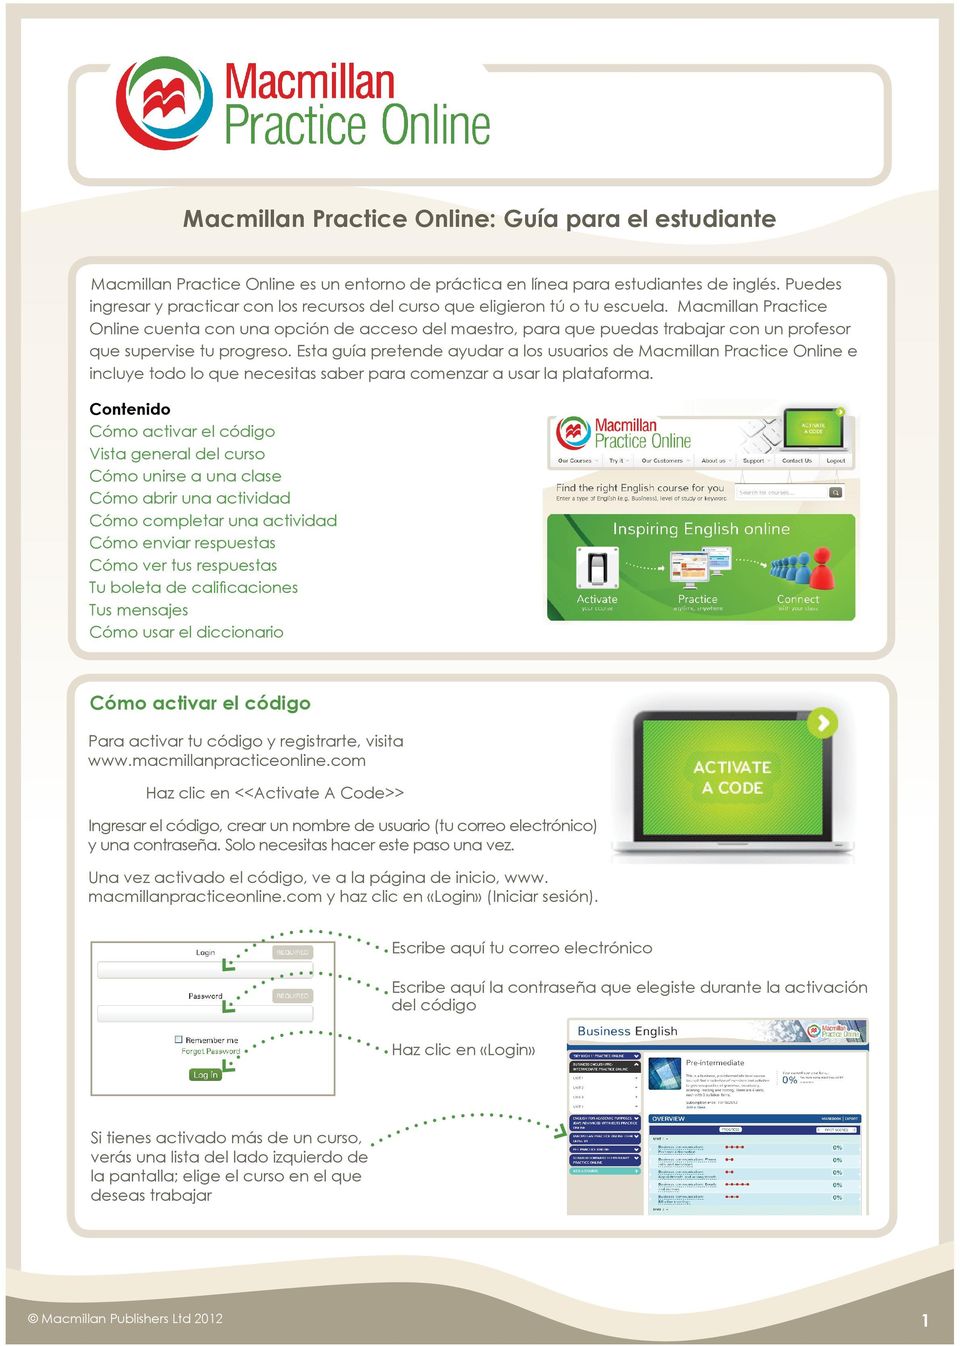 Macmillan Practice Online cuenta con una opción de acceso del maestro, para que puedas trabajar con un profesor que supervise tu progreso.